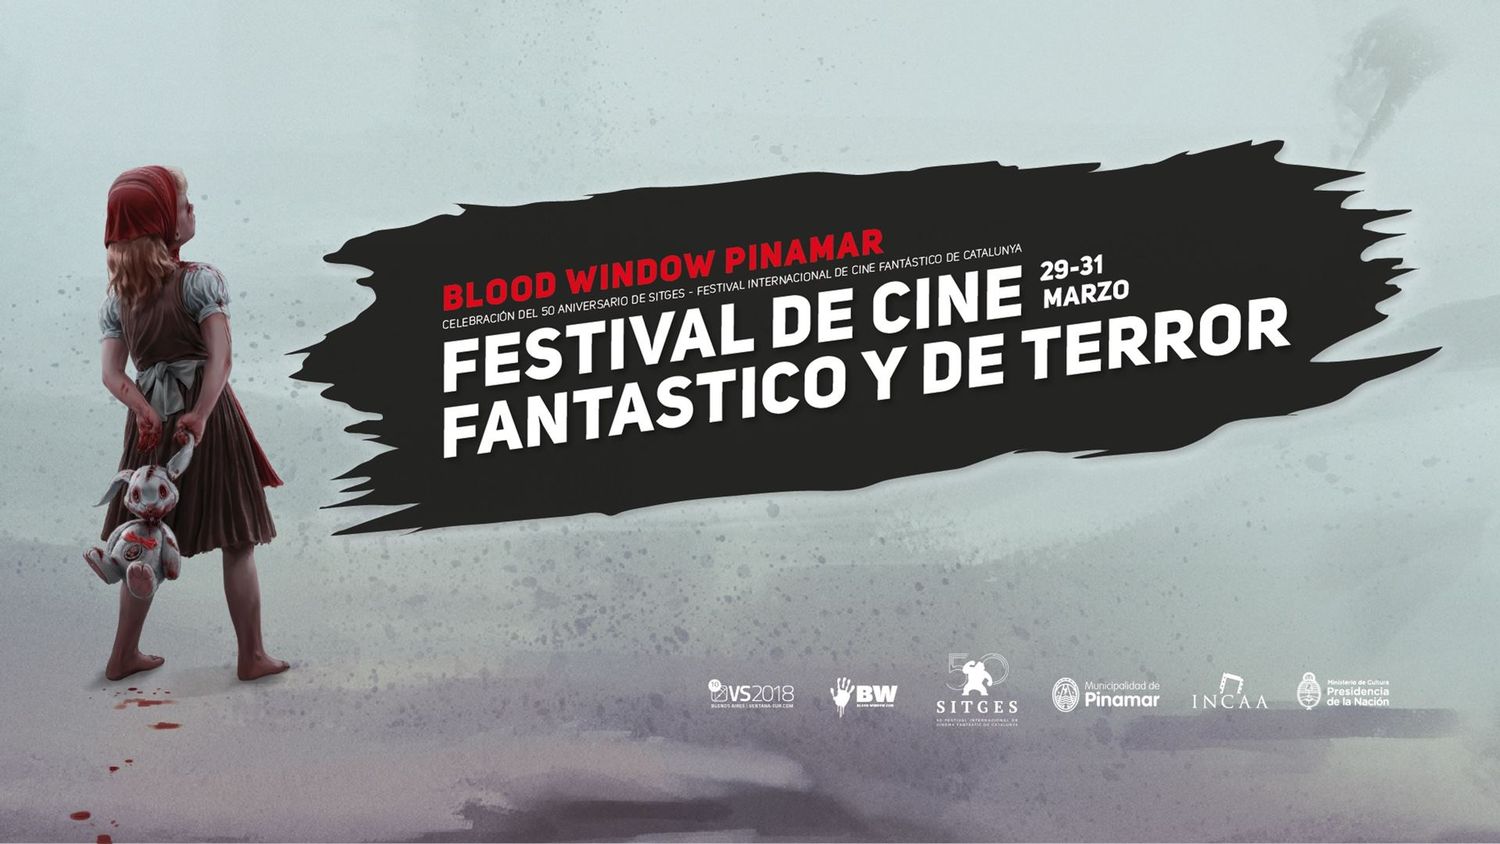 Cine Fantástico y de Terror: La programación del Festival Blood Window Pinamar 2018